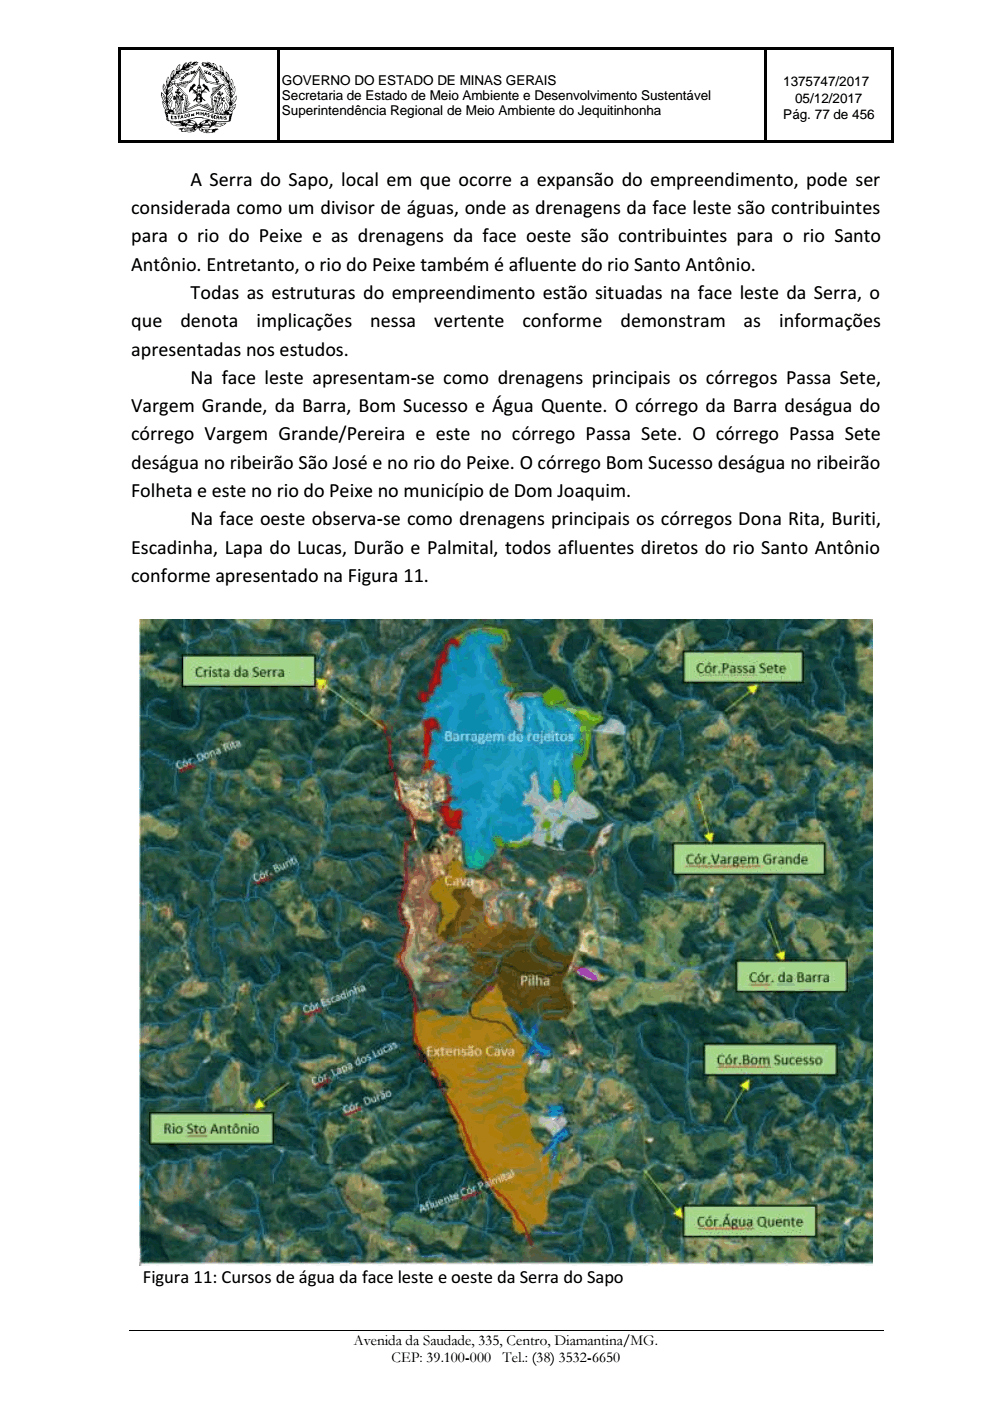 Page 77 from Parecer único da Secretaria de estado de Meio Ambiente e Desenvolvimento Sustentável (SEMAD)